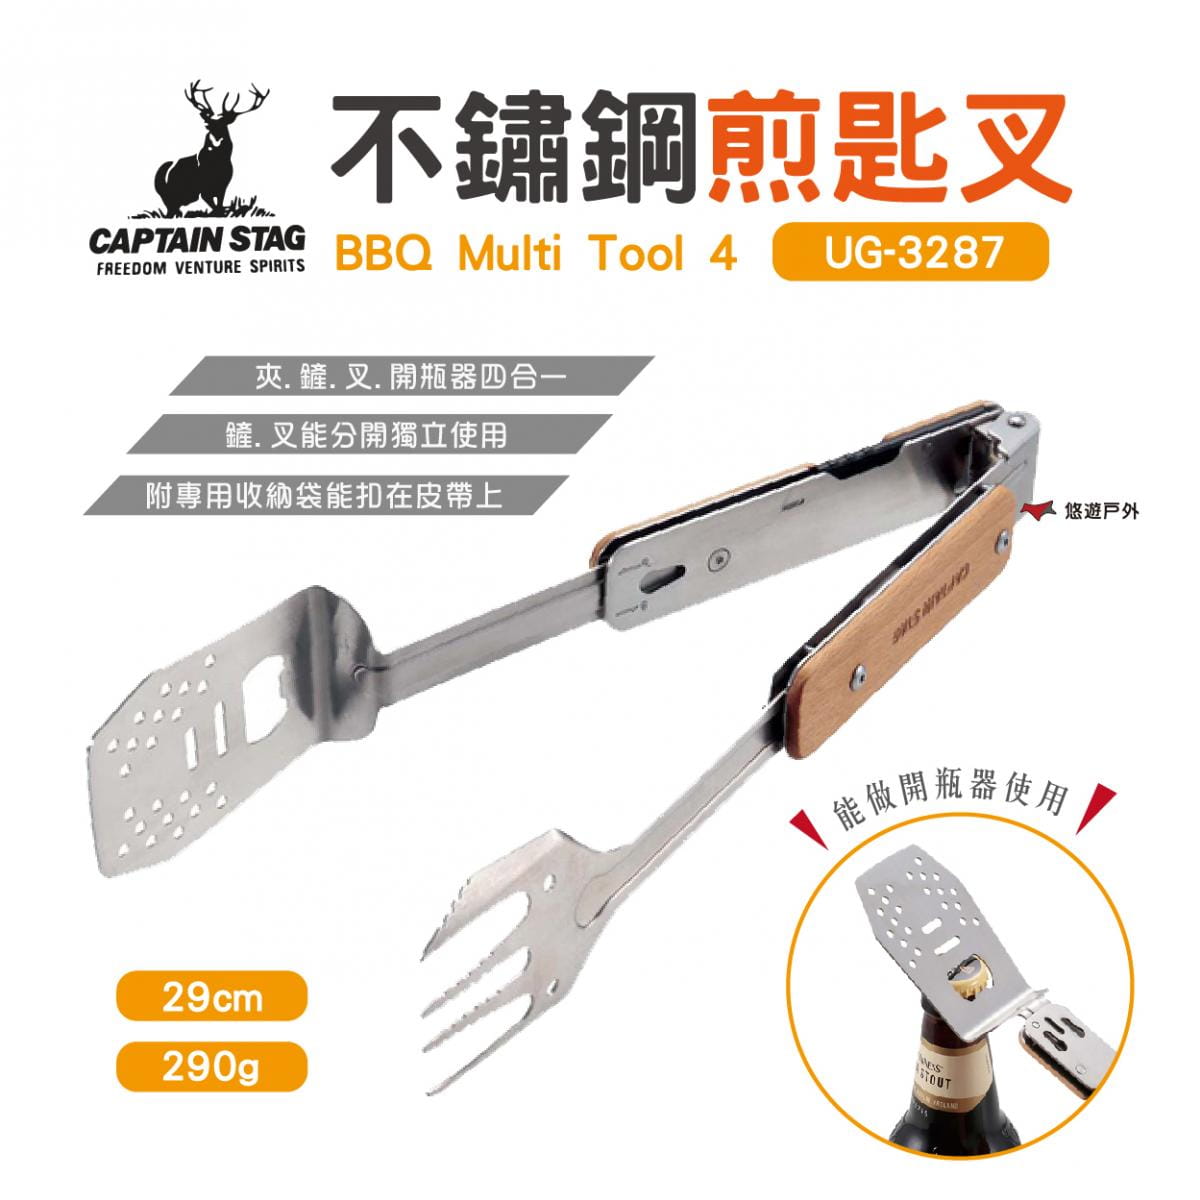 【日本鹿牌】不鏽鋼煎匙叉BBQ UG-3287 (悠遊戶外) 0